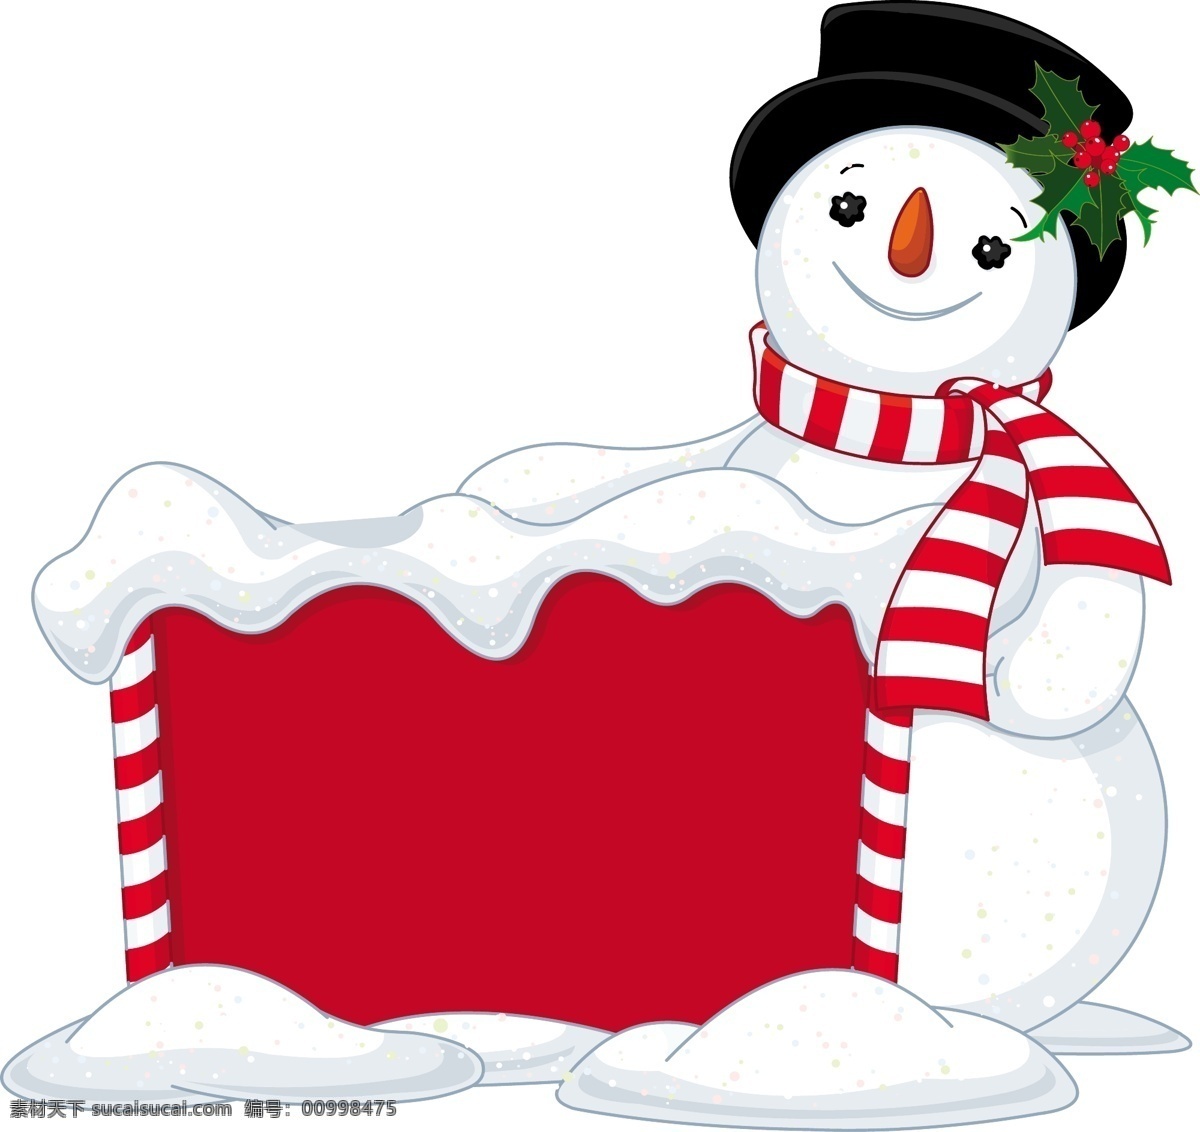 背景 节日素材 卡通 可爱 圣诞 圣诞节 圣诞雪人 圣诞主题 时尚 雪人 矢量 模板下载 手绘